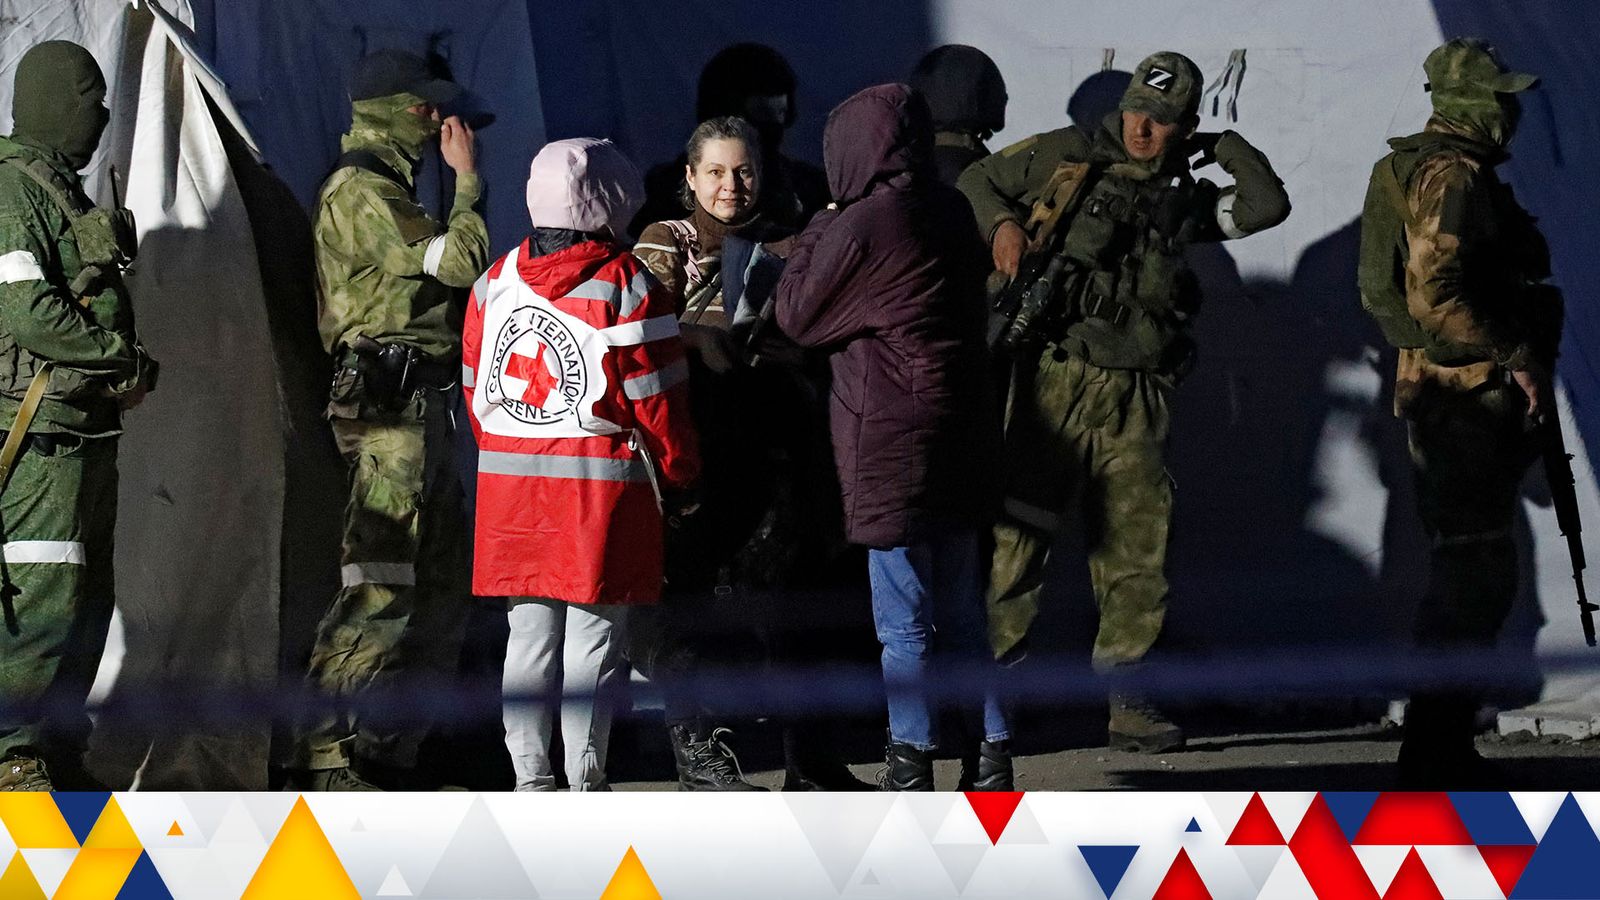 Notícias ao vivo da Ucrânia: Rússia afirma ter destruído um navio de guerra;  todas as mulheres, crianças e idosos evacuados da siderurgia |  Noticias do mundo